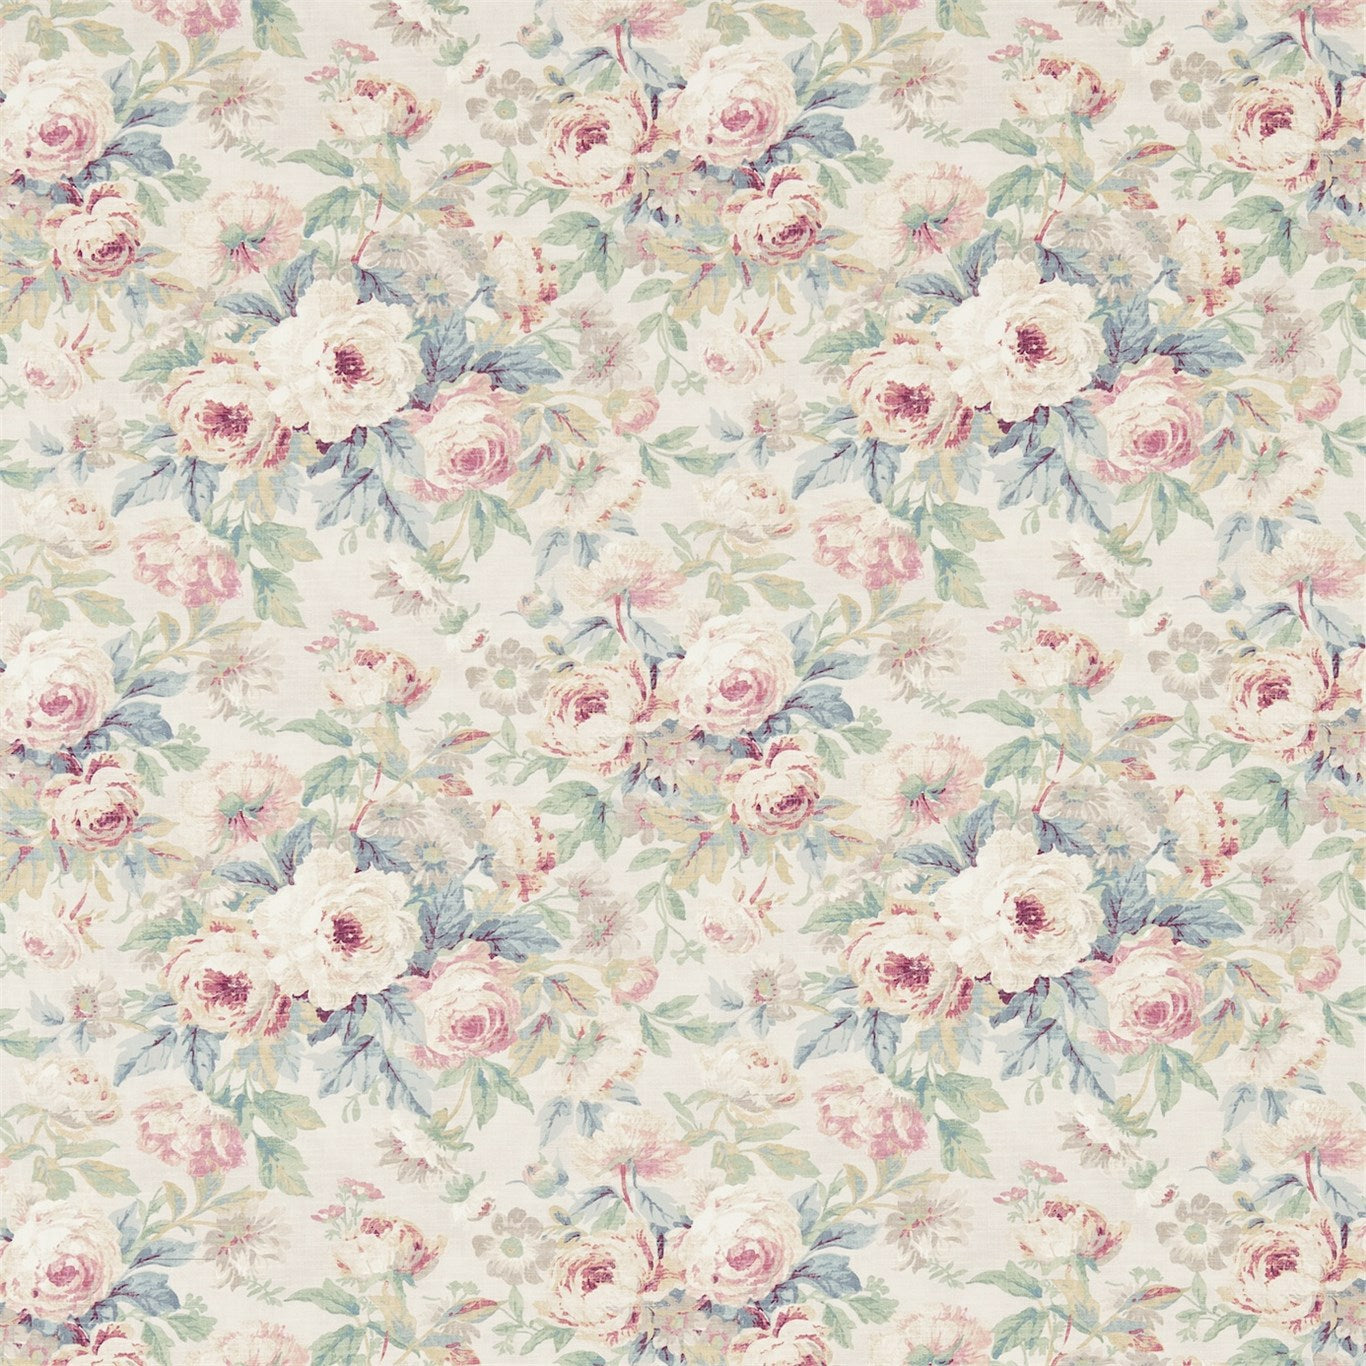 Amelia Rose Fabric by Sanderson - DFAB223977 - Wedgwood/Rose